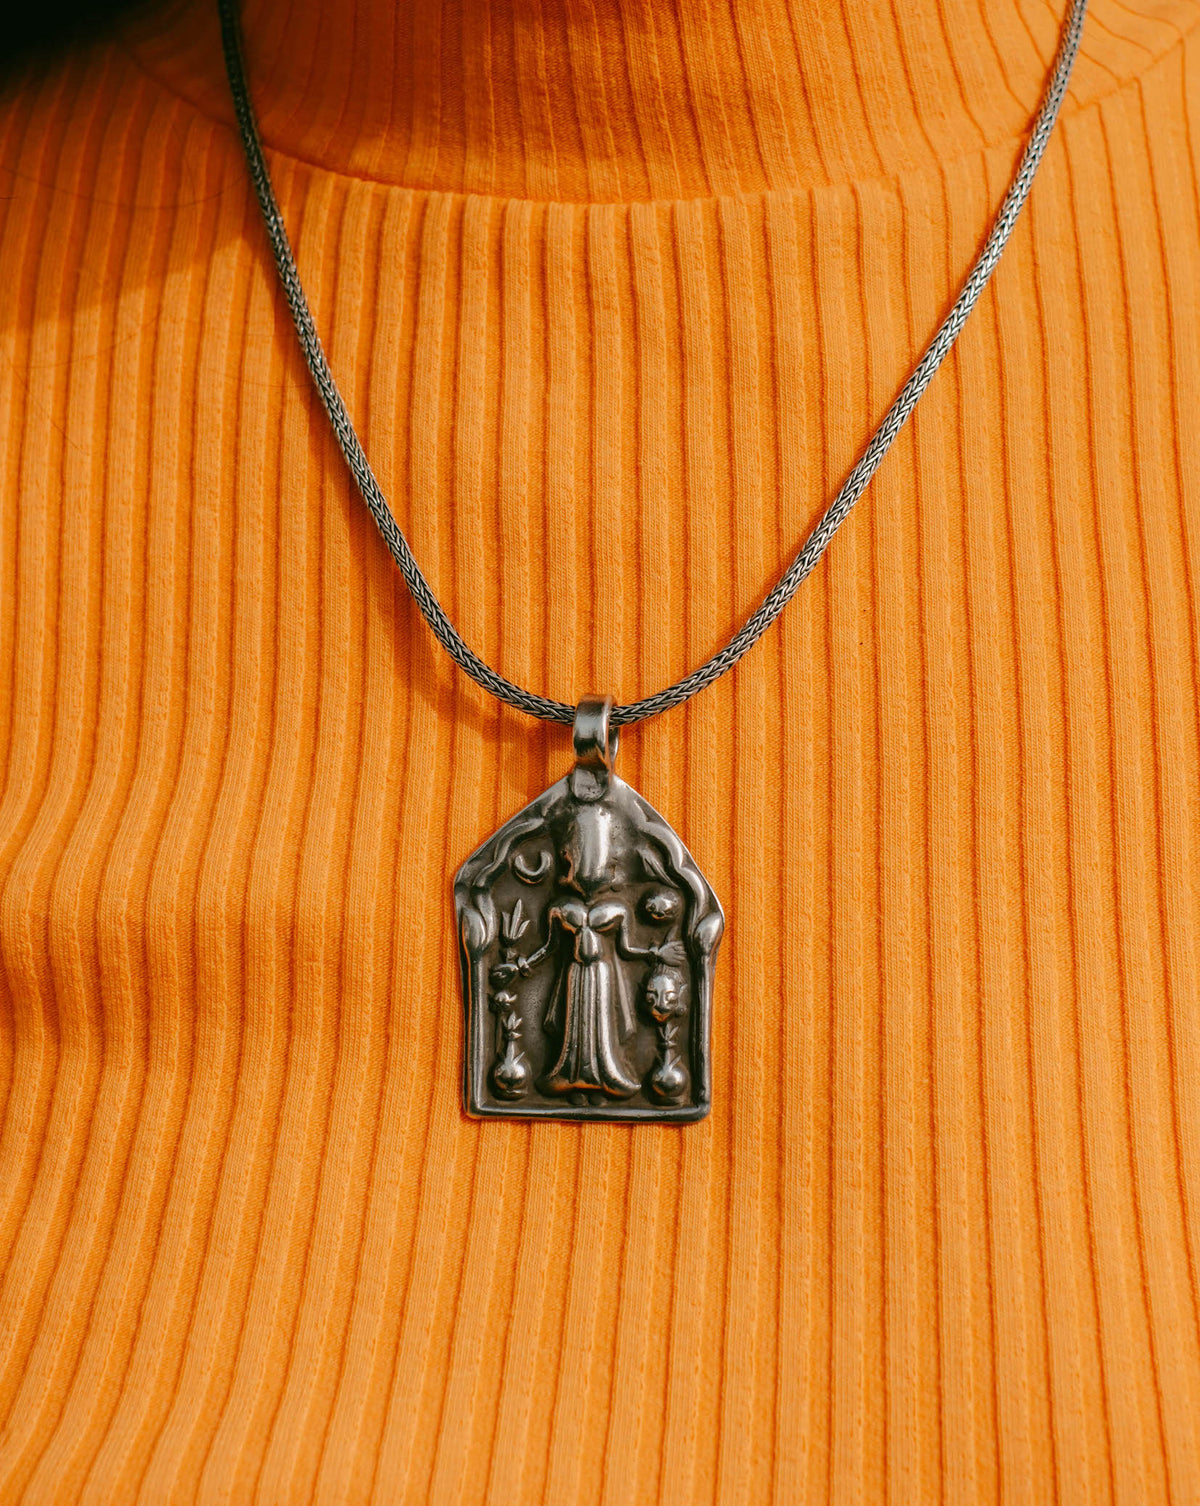 Antiguo amuleto del Rajasthan ( India)&nbsp; hecho a mano en plata con la diosa hindú Laxmi, que simboliza la abundancia, felicidad y salud. La cadena es contemporánea, también de plata. Colgante 5'5 x 3 cm / Cadena 49 cm. Peso colganate&nbsp; 14 g./&nbsp; Peso cadena17 g. &nbsp; Joyeria etnica. Piezas unicas .Lula Máiz